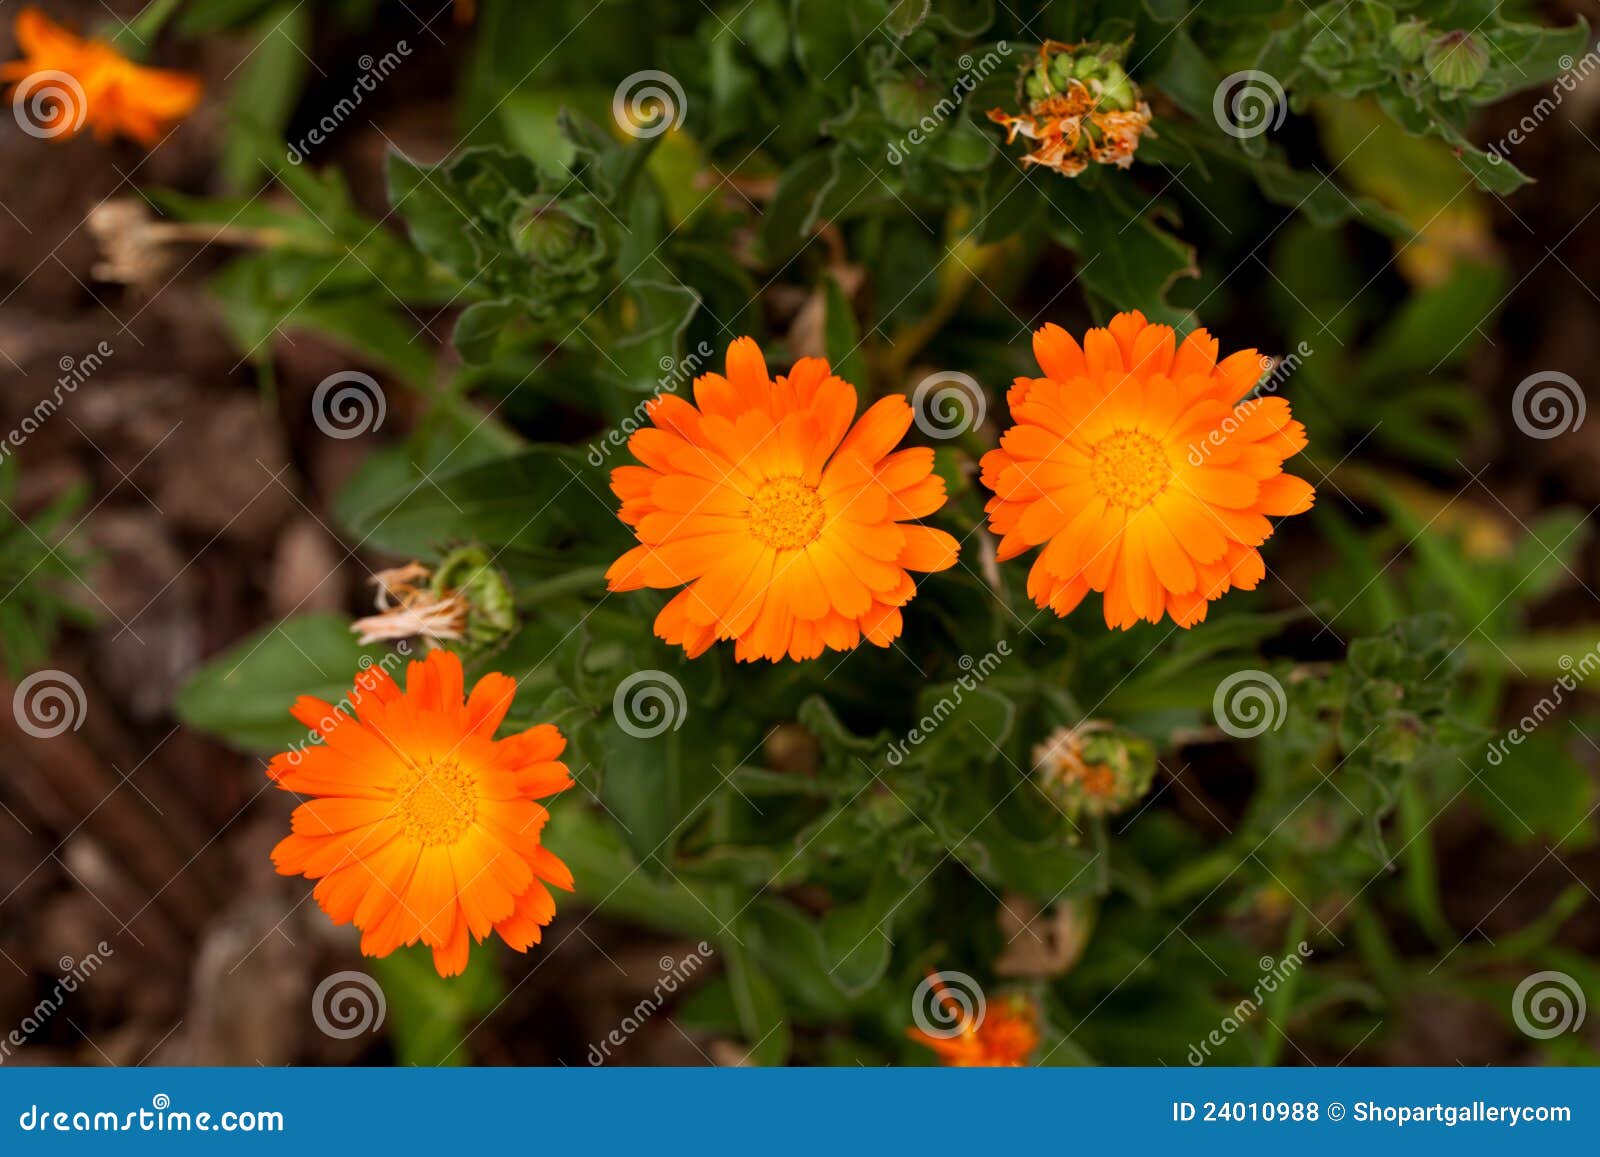 Calendula Flowers - calendula officinalis